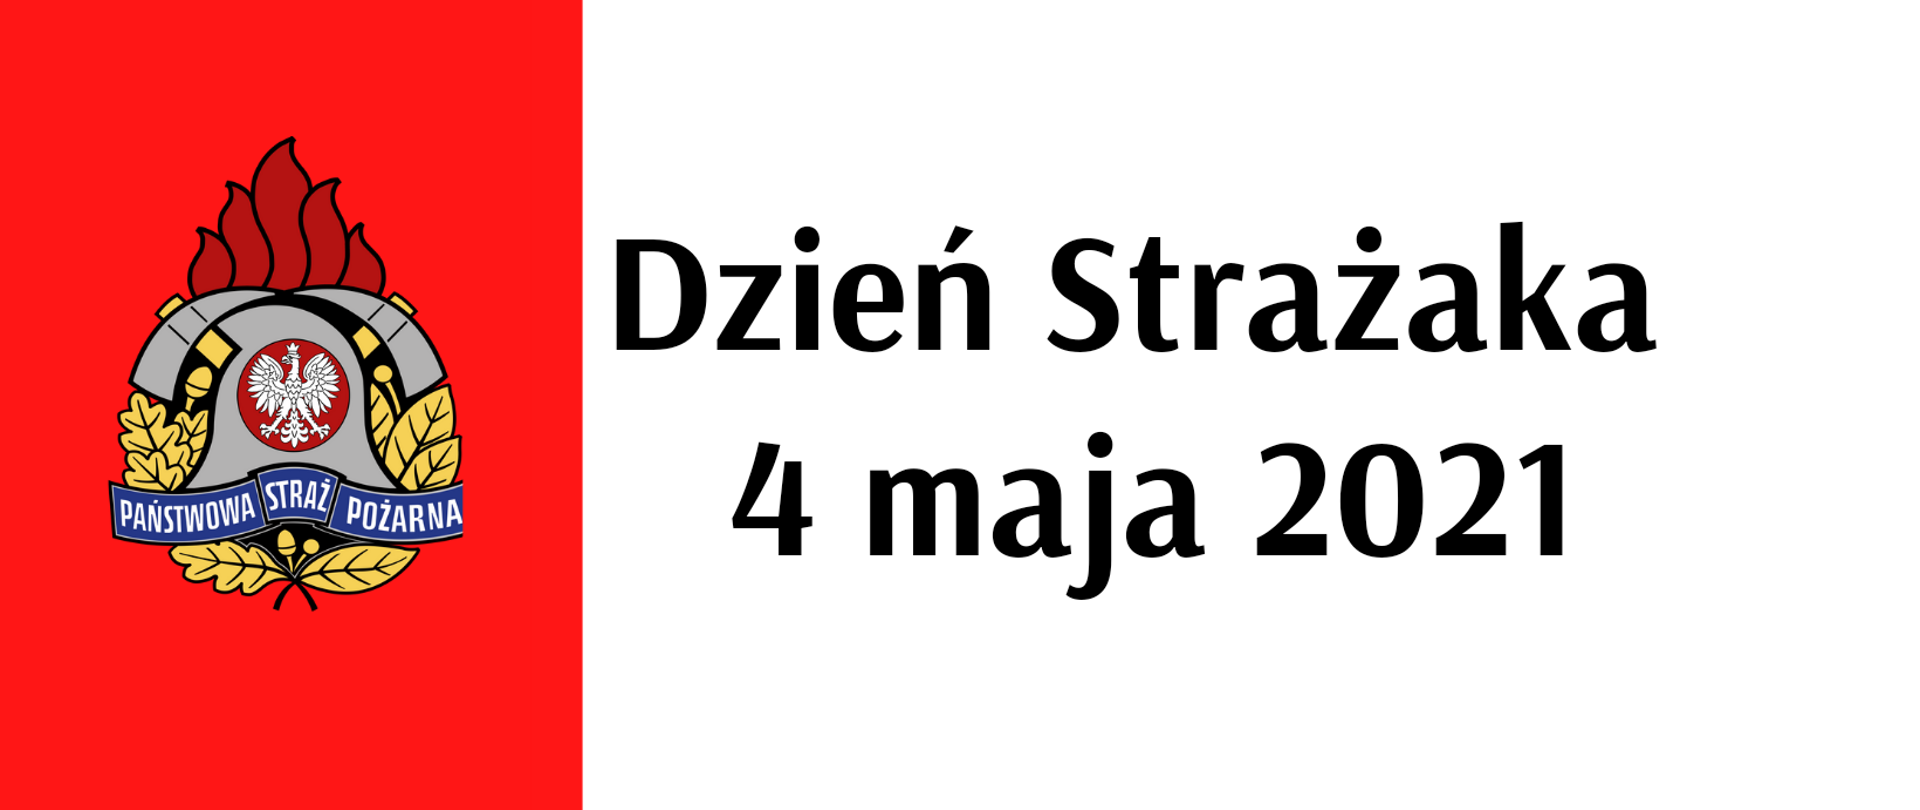 Baner: Po lewo logo PSP , po prawo napis Dzień Strażaka 4 maja 2021 r. 